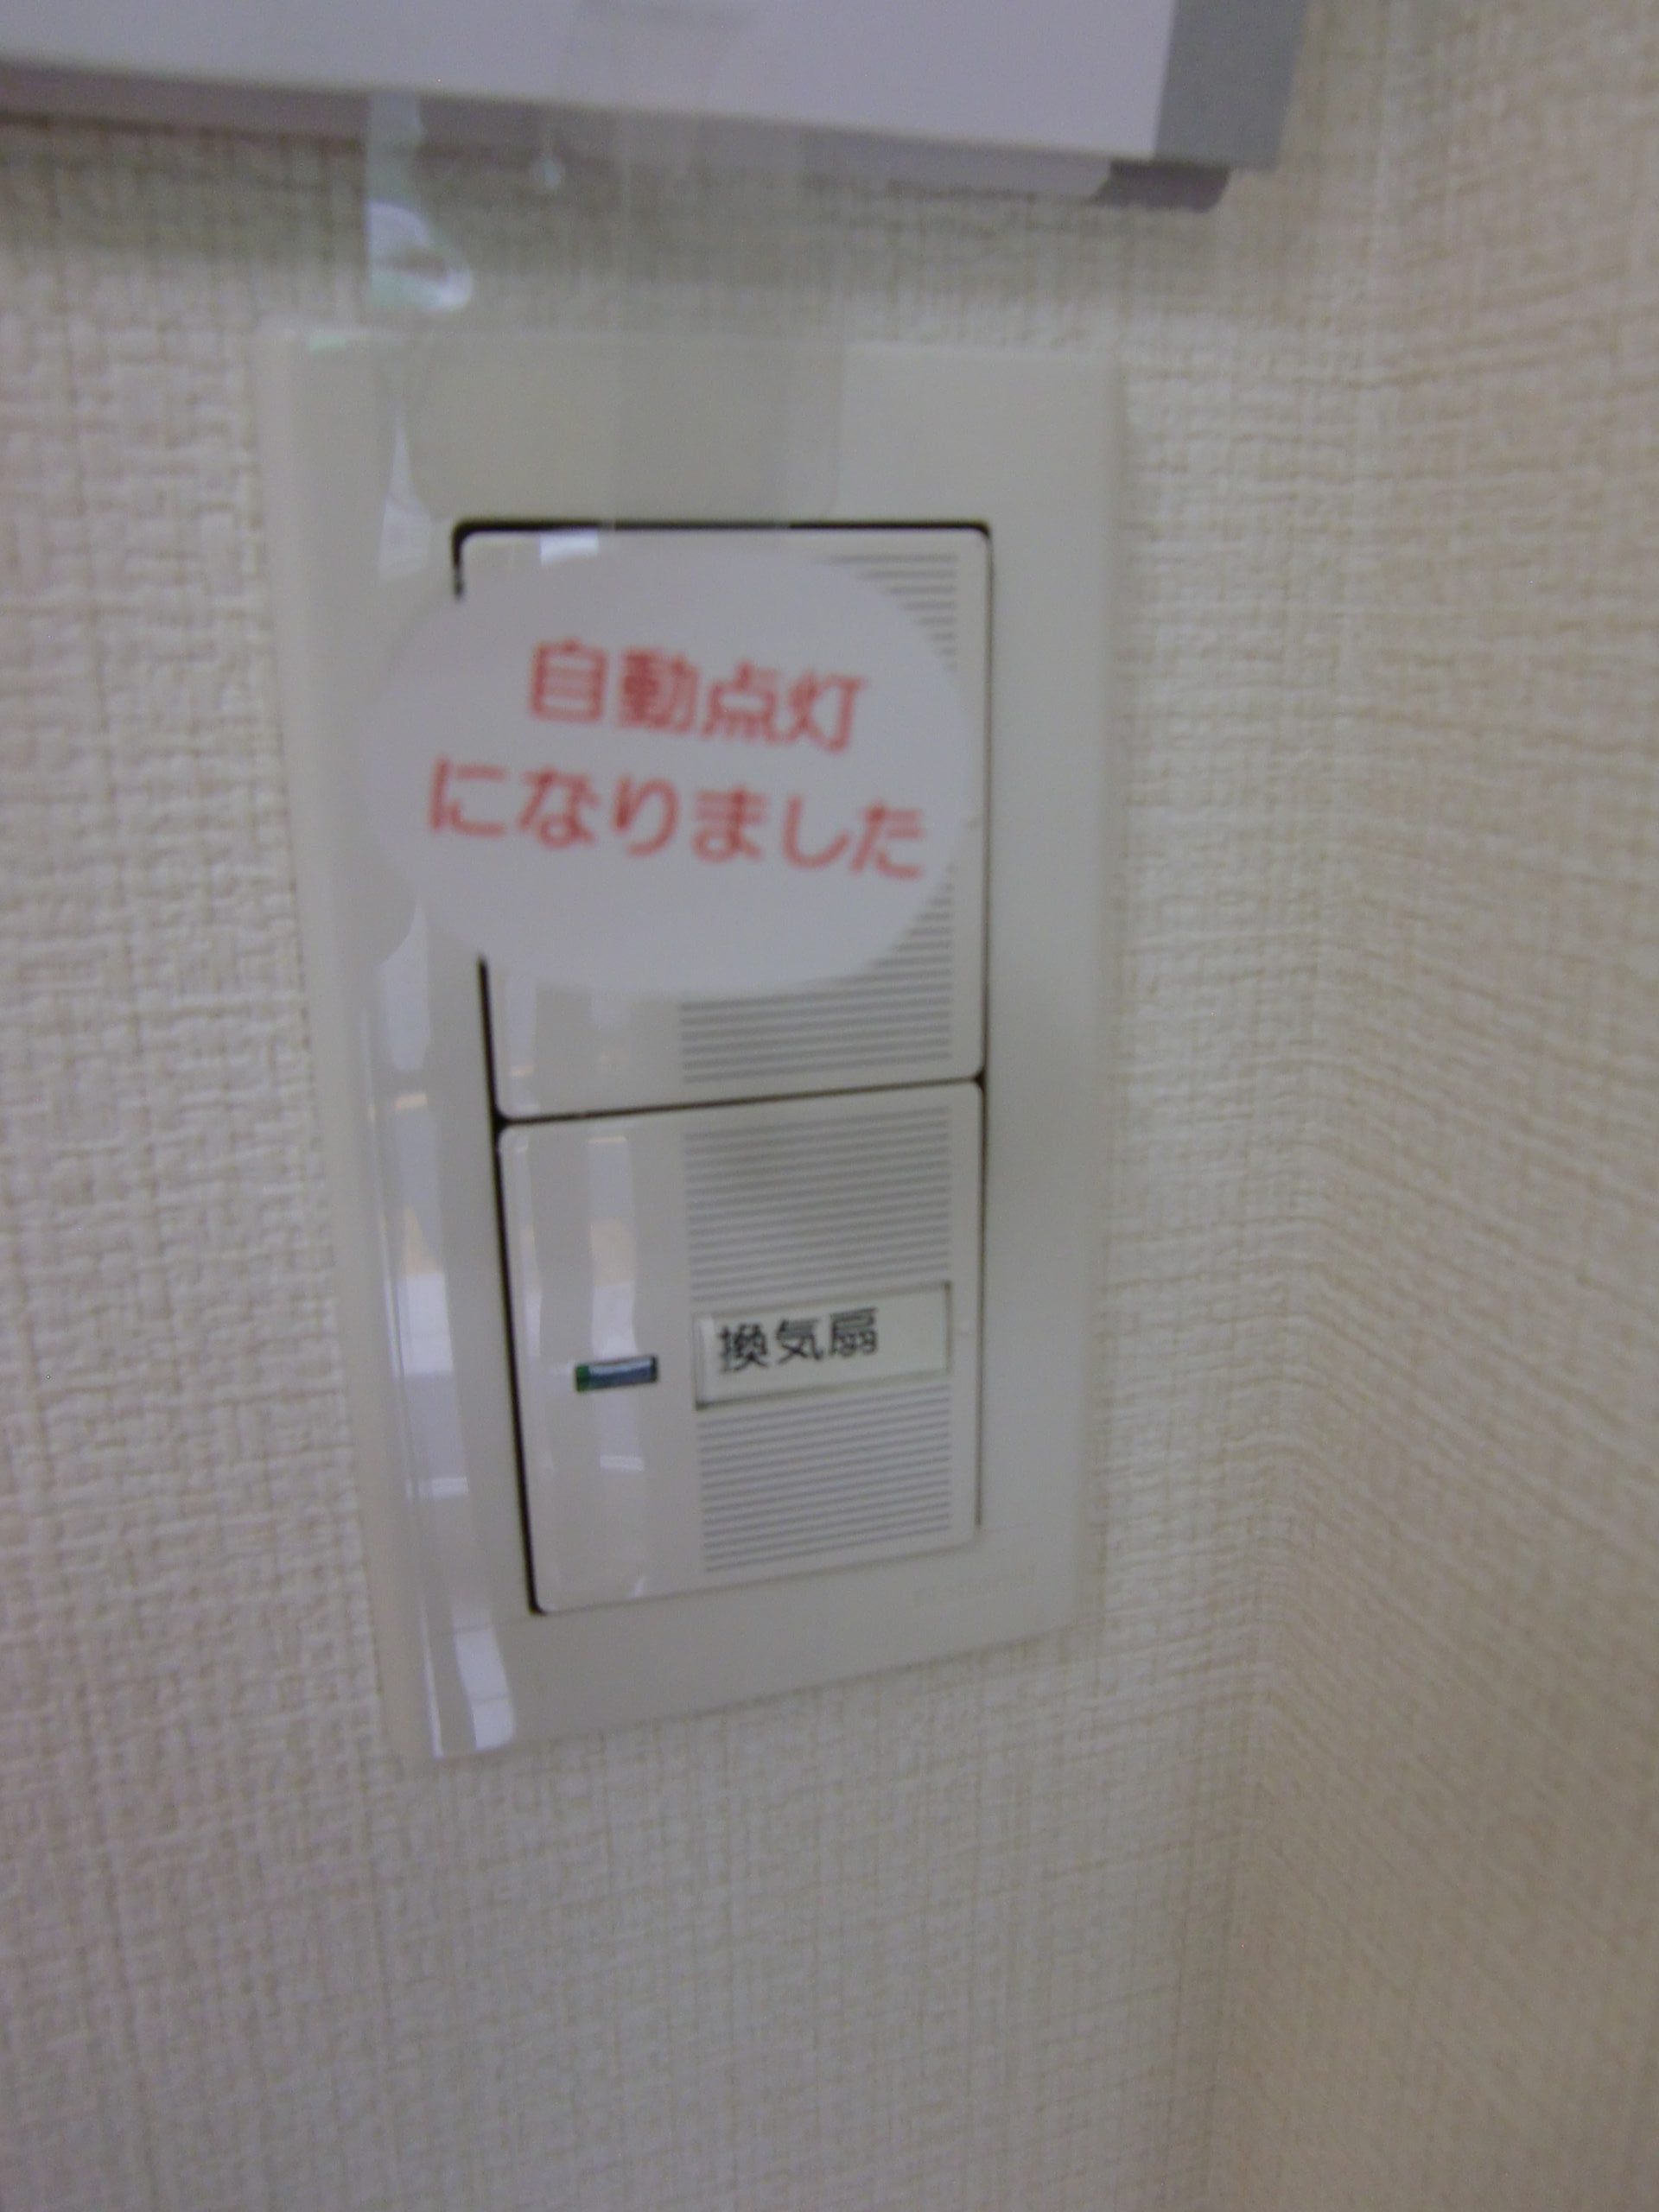 トイレの電気スイッチをセンサー式に変更しました。｜お知らせ｜加古川・東加古川で腰痛、坐骨神経痛でお困りなら、たなか